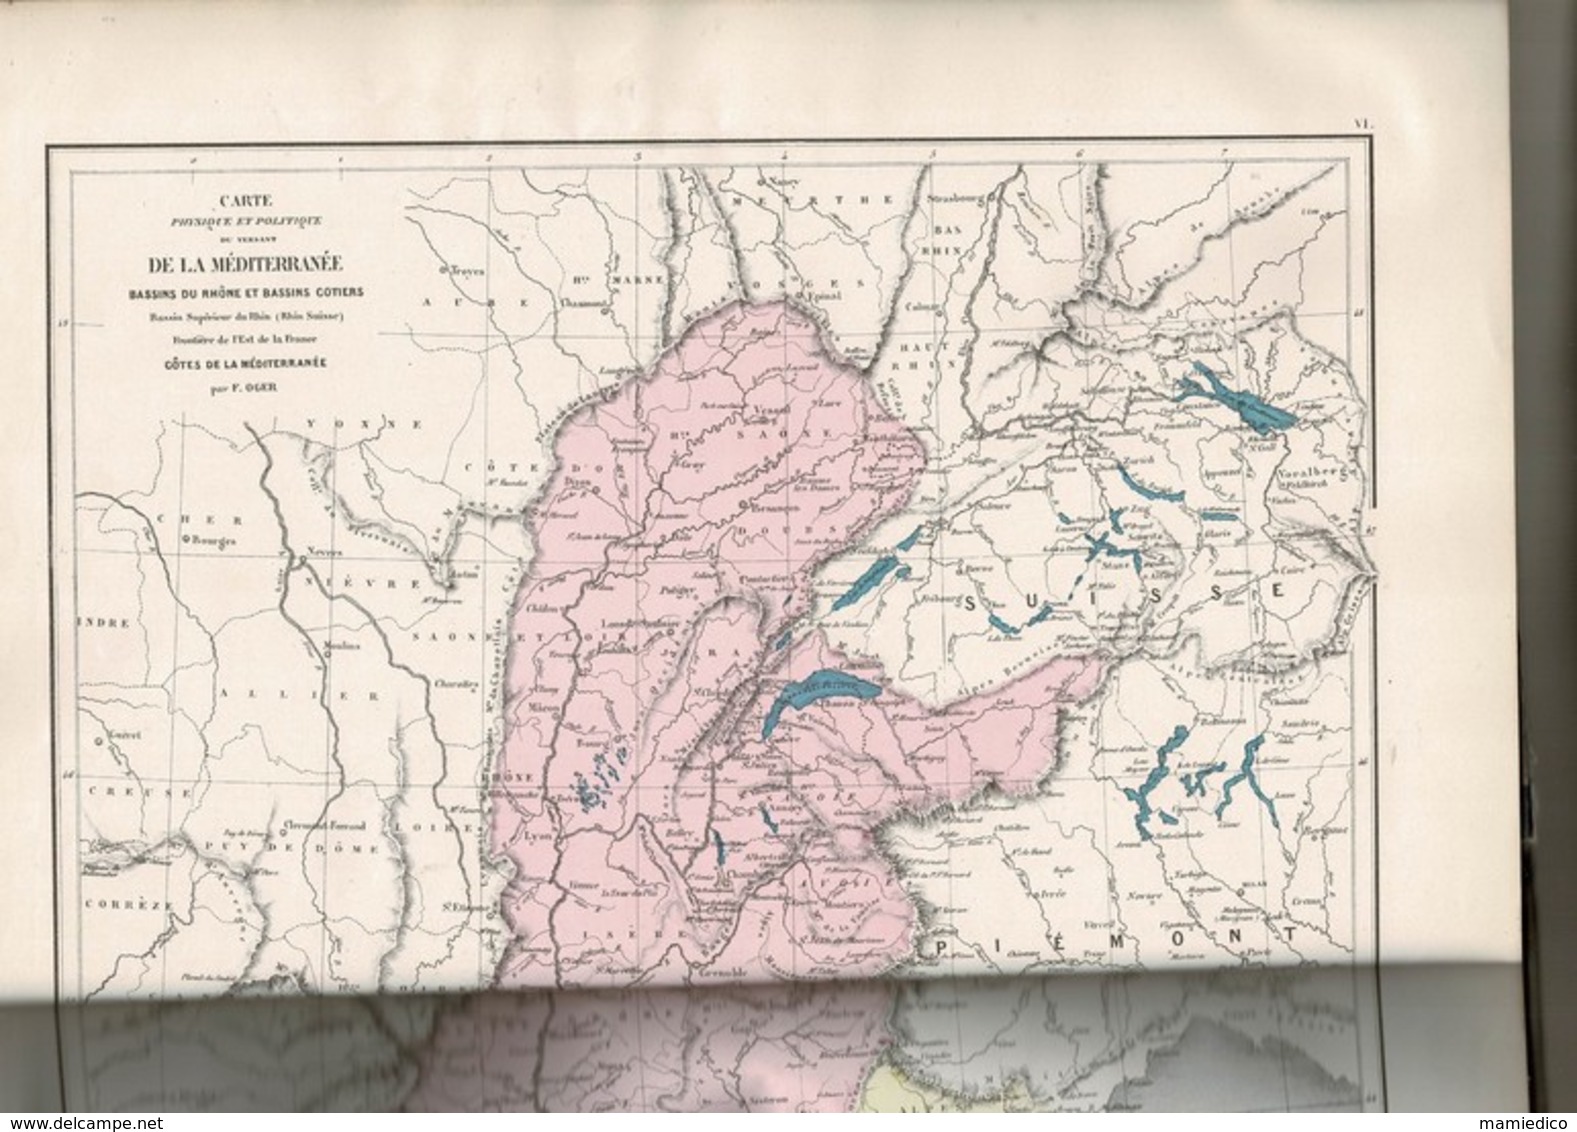 1878 Atlas Géographie Générale par F. OGER contenant 33 cartes coloriées. Atlas :30/43cm, chaque carte dépliée: 51/43 cm